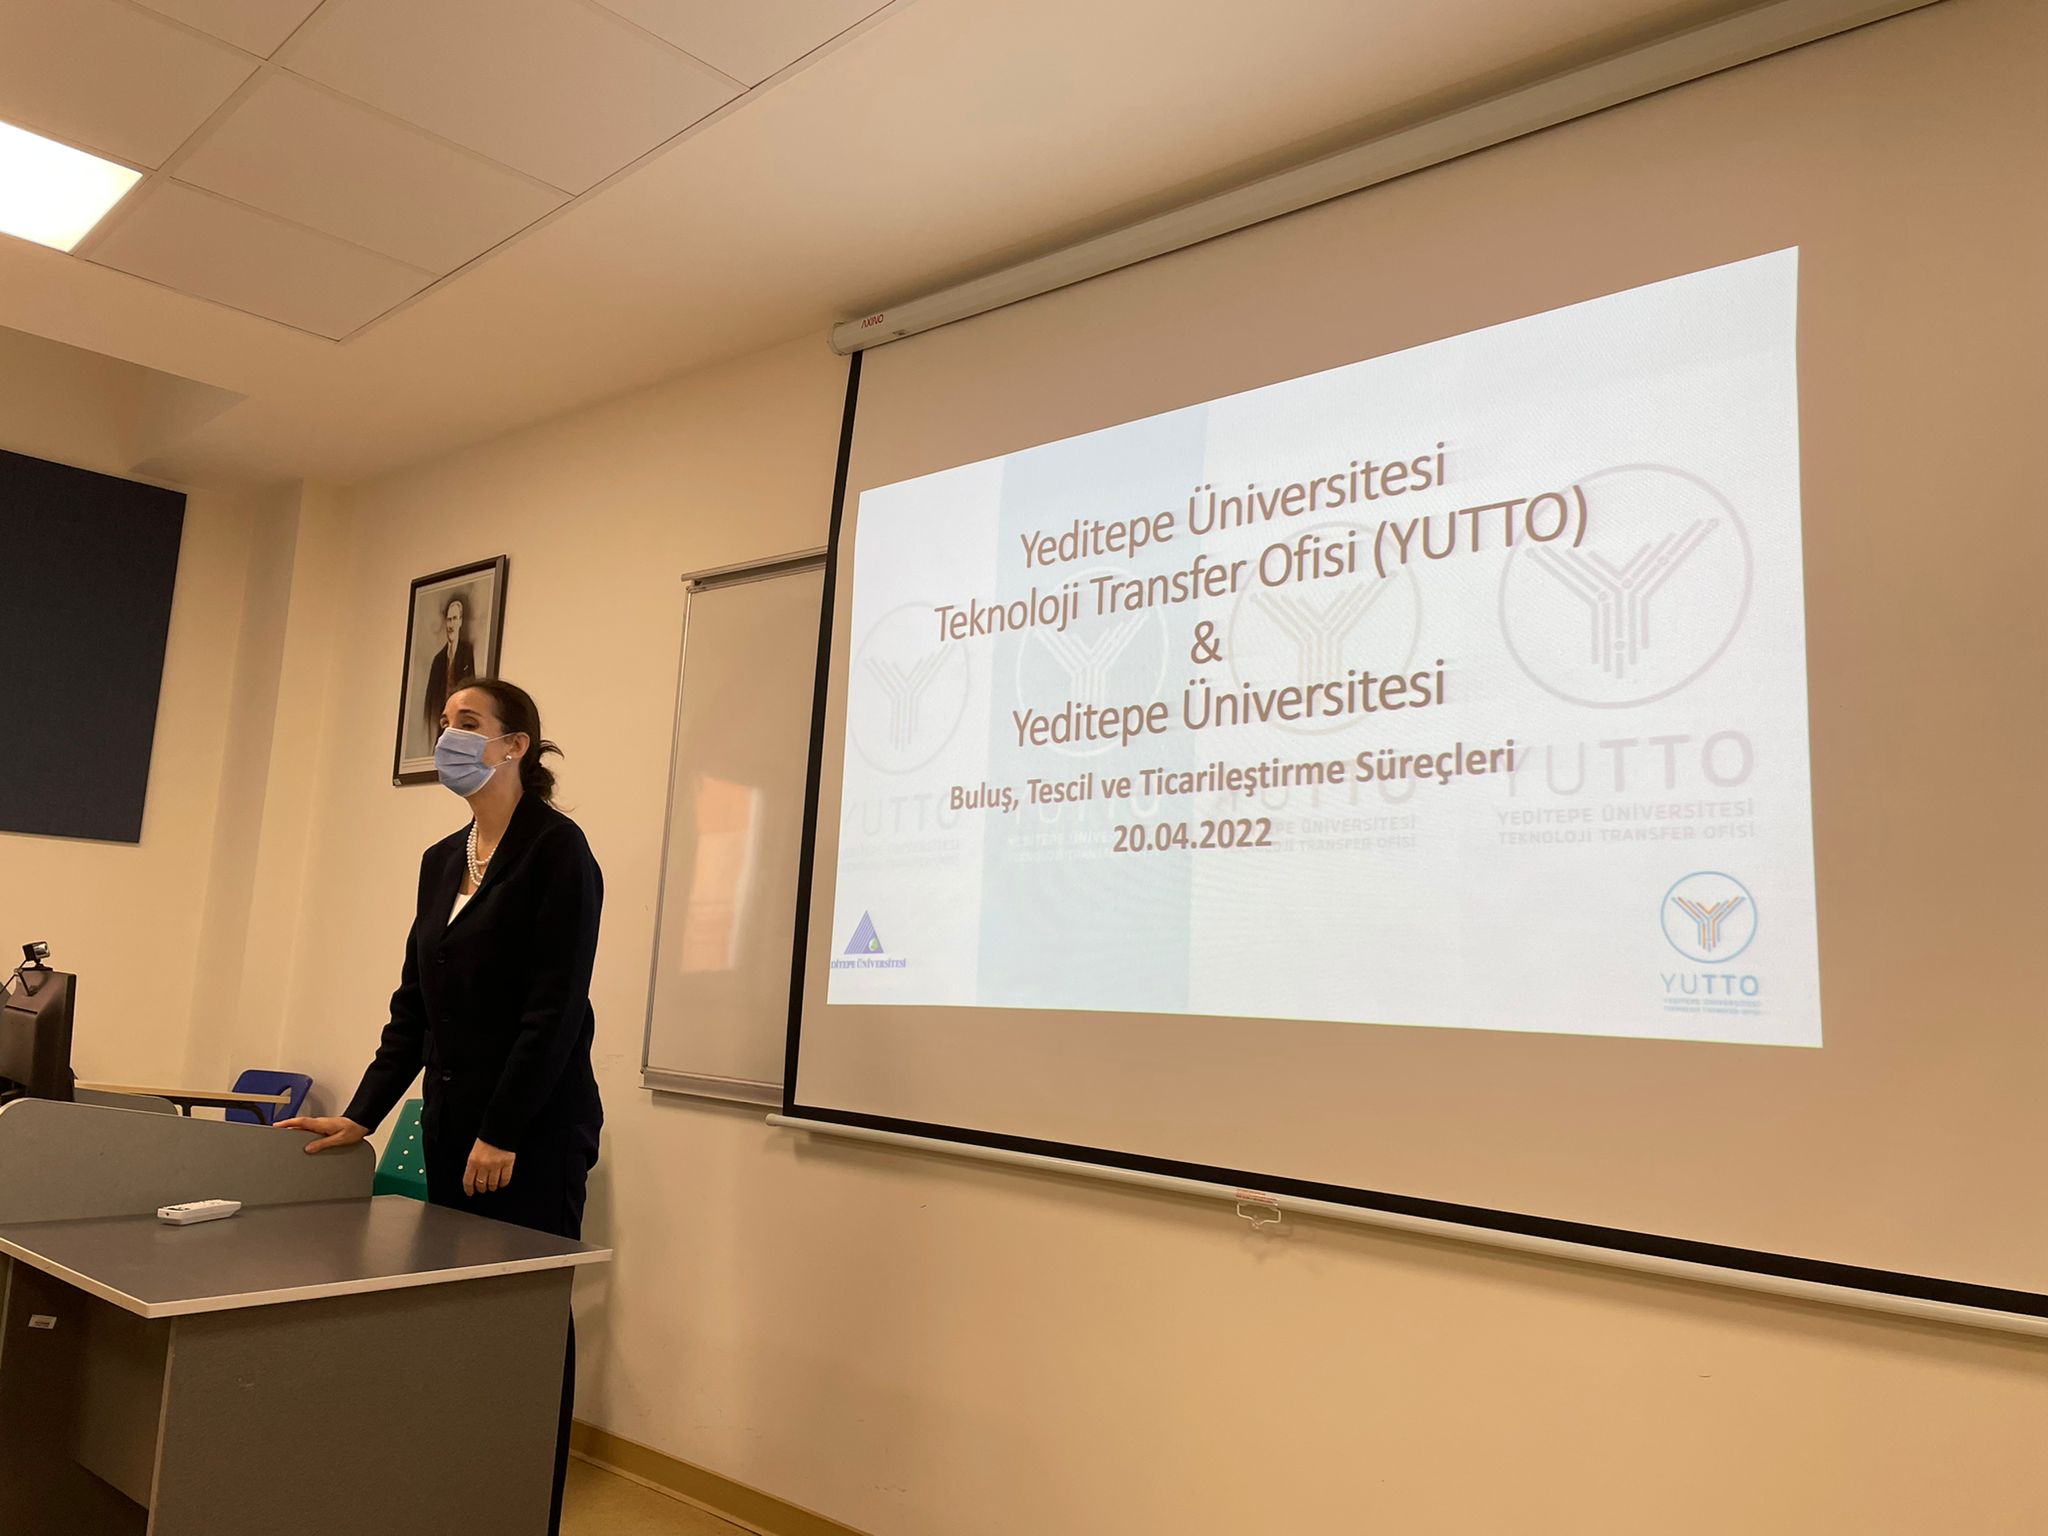 Yeditepe Üniversitesi Sağlık Bilimleri Fakültesi Hemşirelik Bölümü Öğrencilerine YUTTO Tanıtımını Gerçekleştirdik!